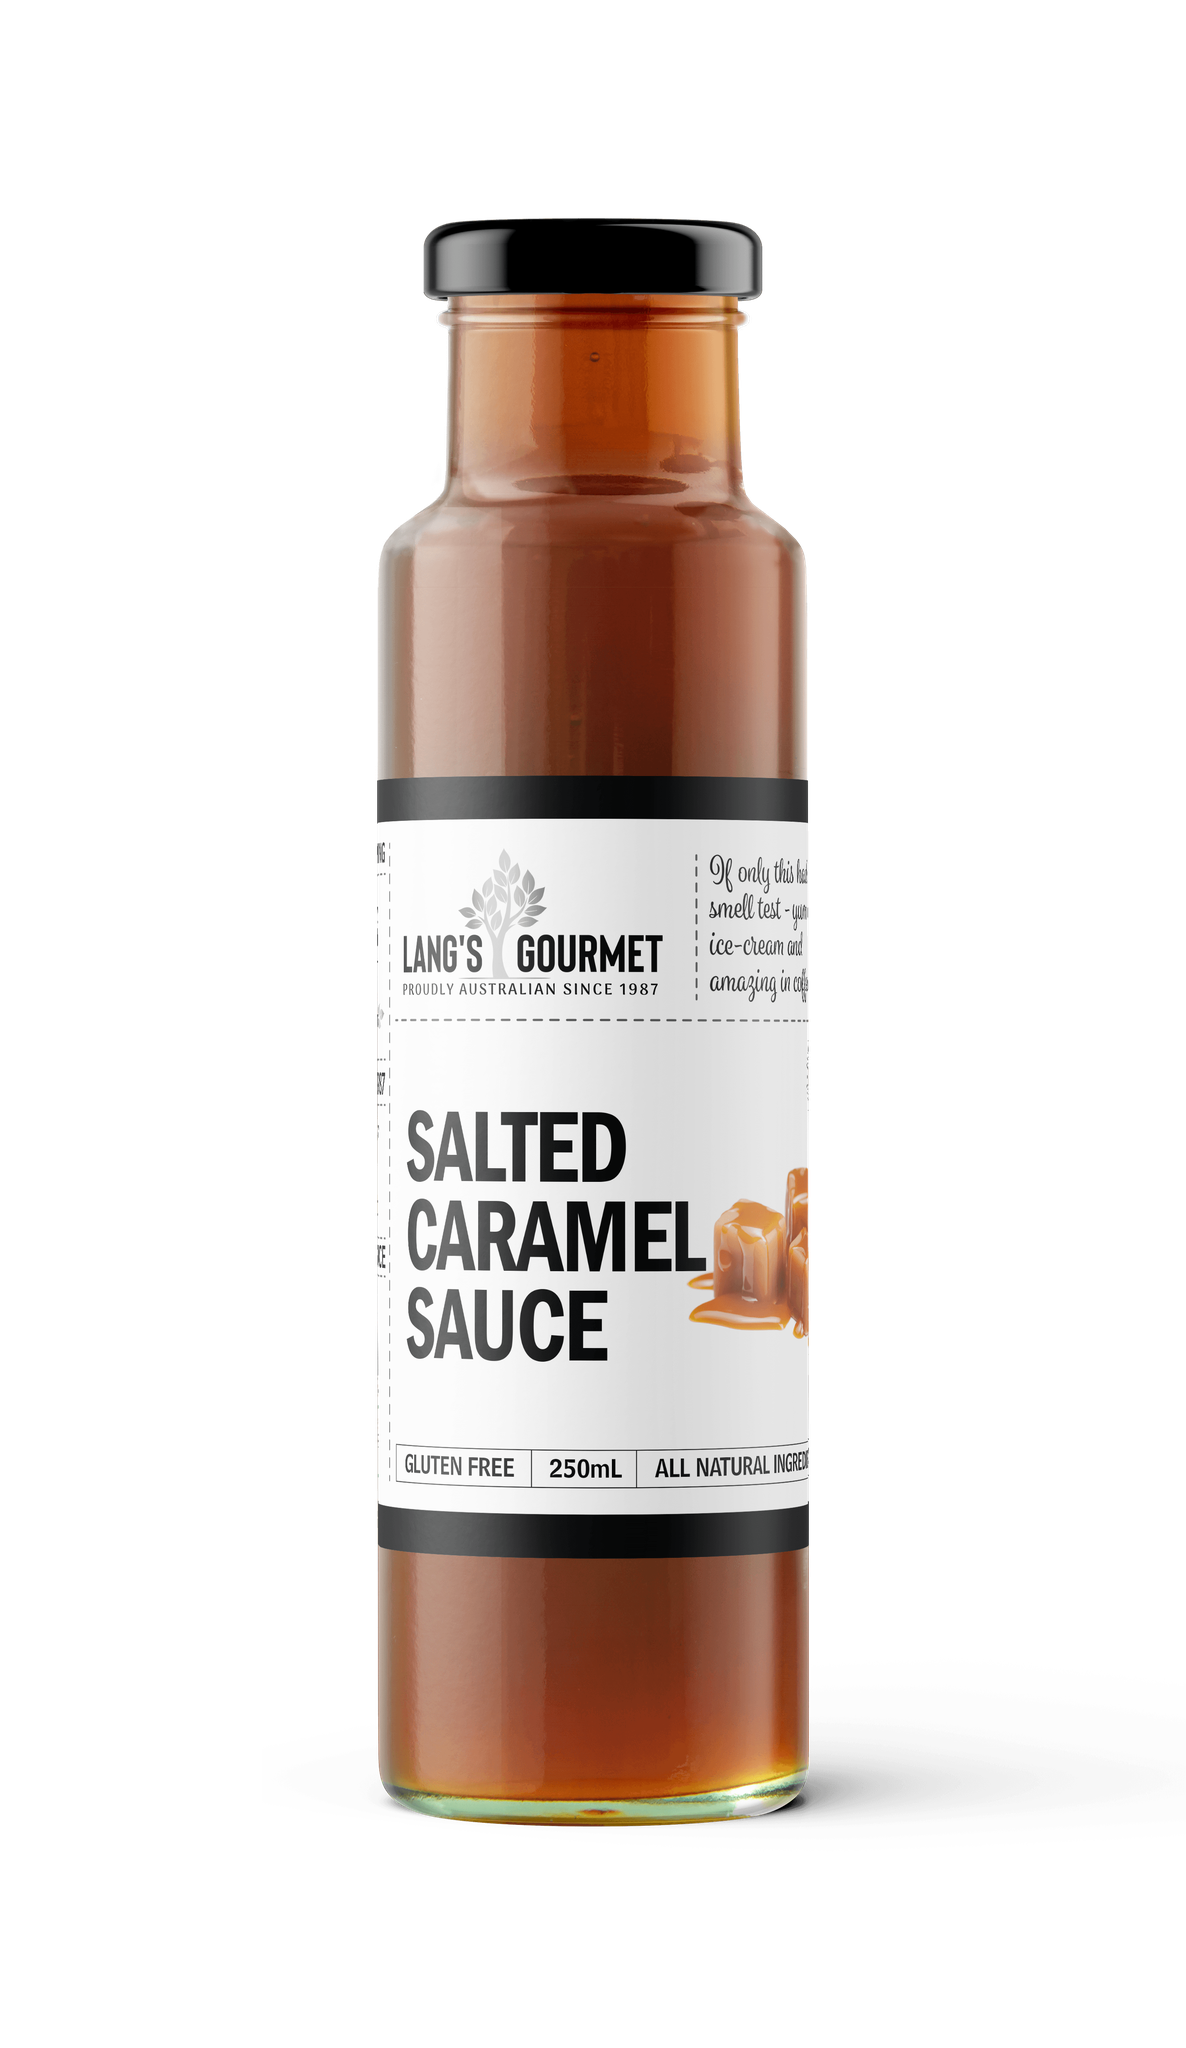 Lang's Gourmet Salted Caramel Sauce